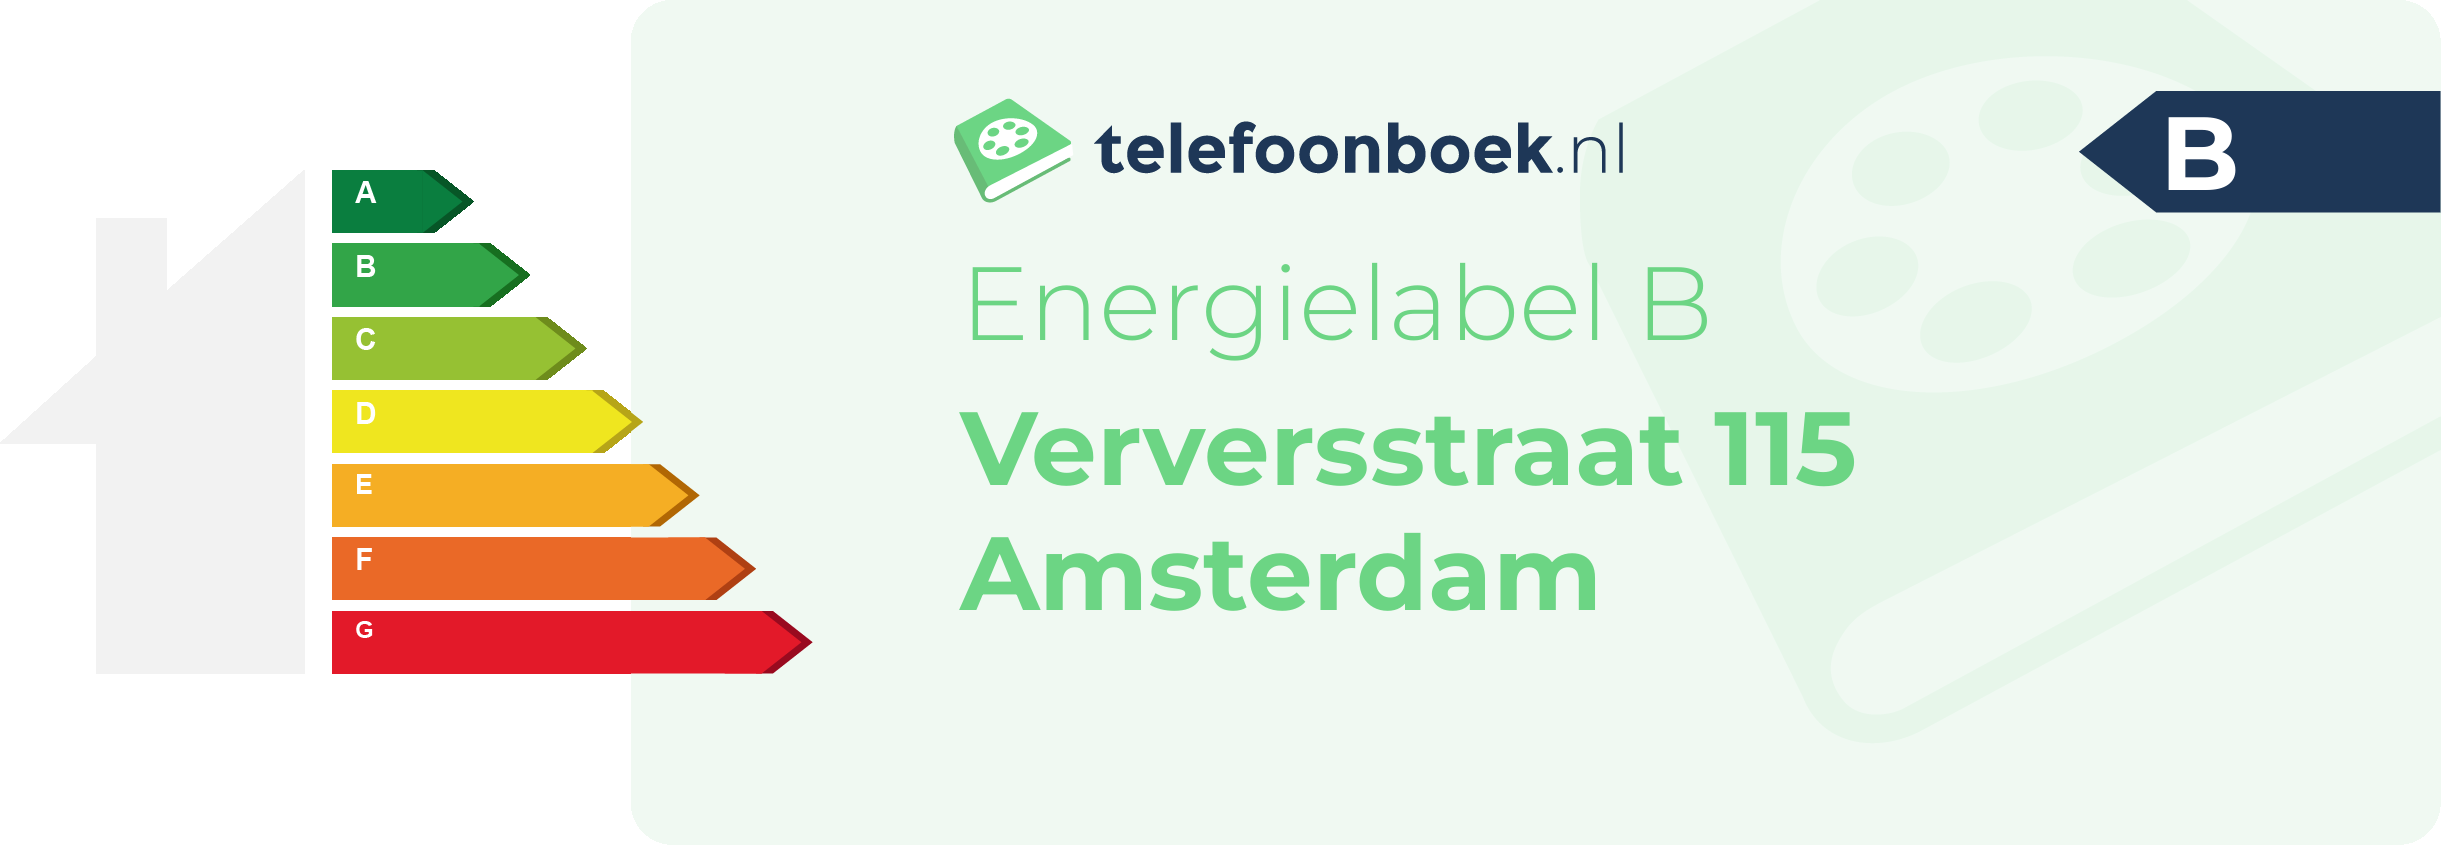 Energielabel Verversstraat 115 Amsterdam